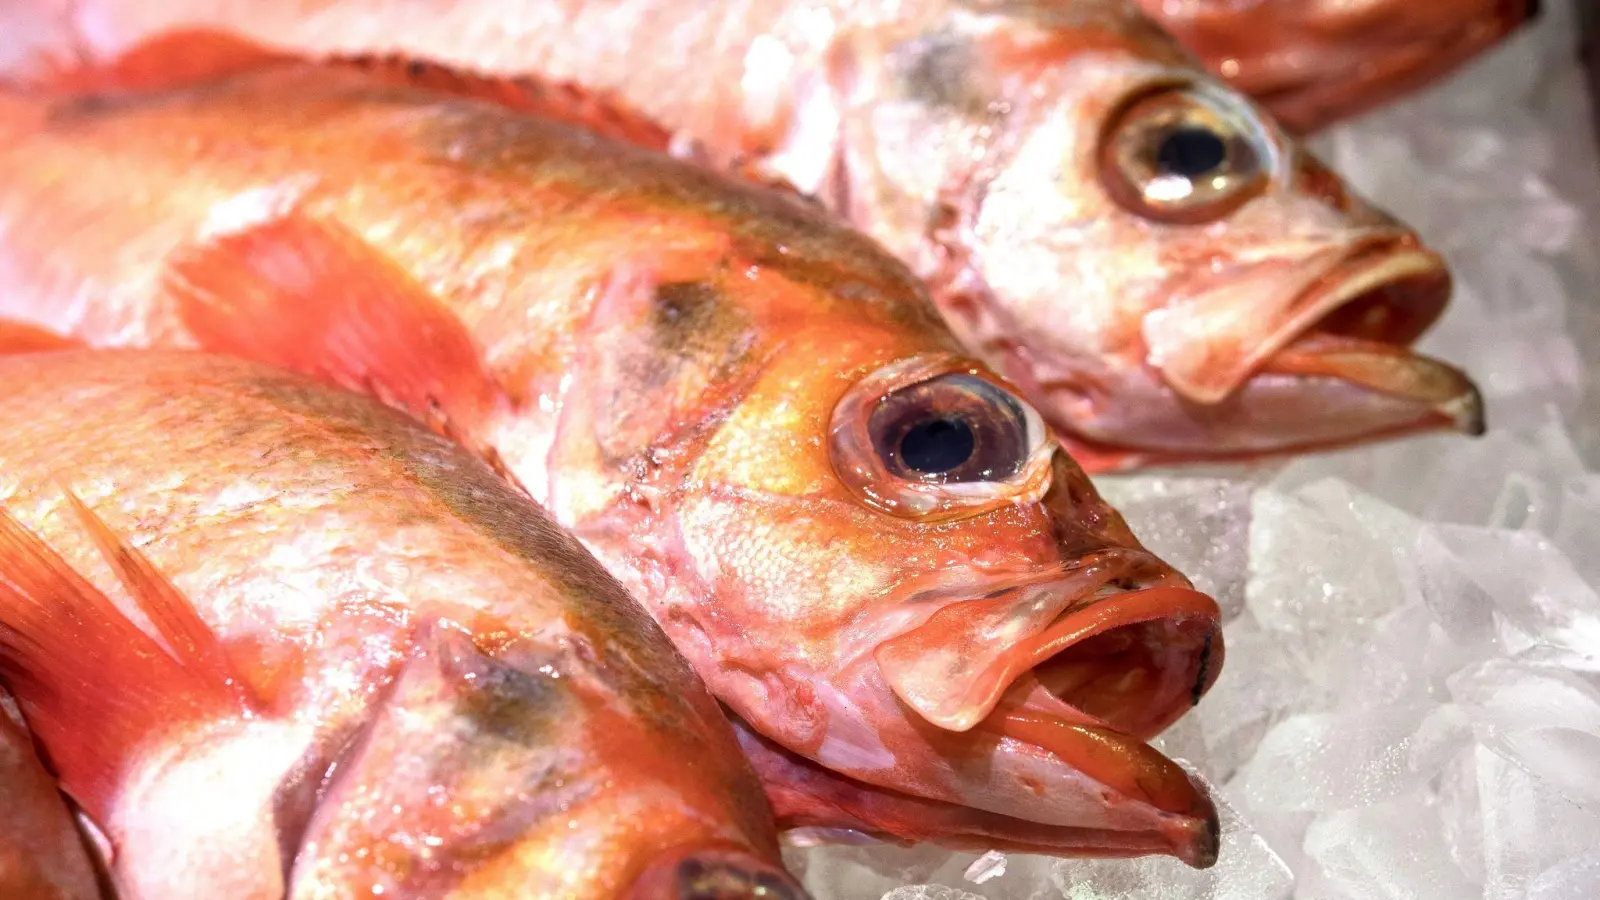 Damit Rotbarsch als empfehlenswert gilt und aus nachhaltigem Fischfang kommt, muss man genau auf das Fanggebiet und die Fangmethode achten. (Foto: Robert Günther/dpa-tmn)